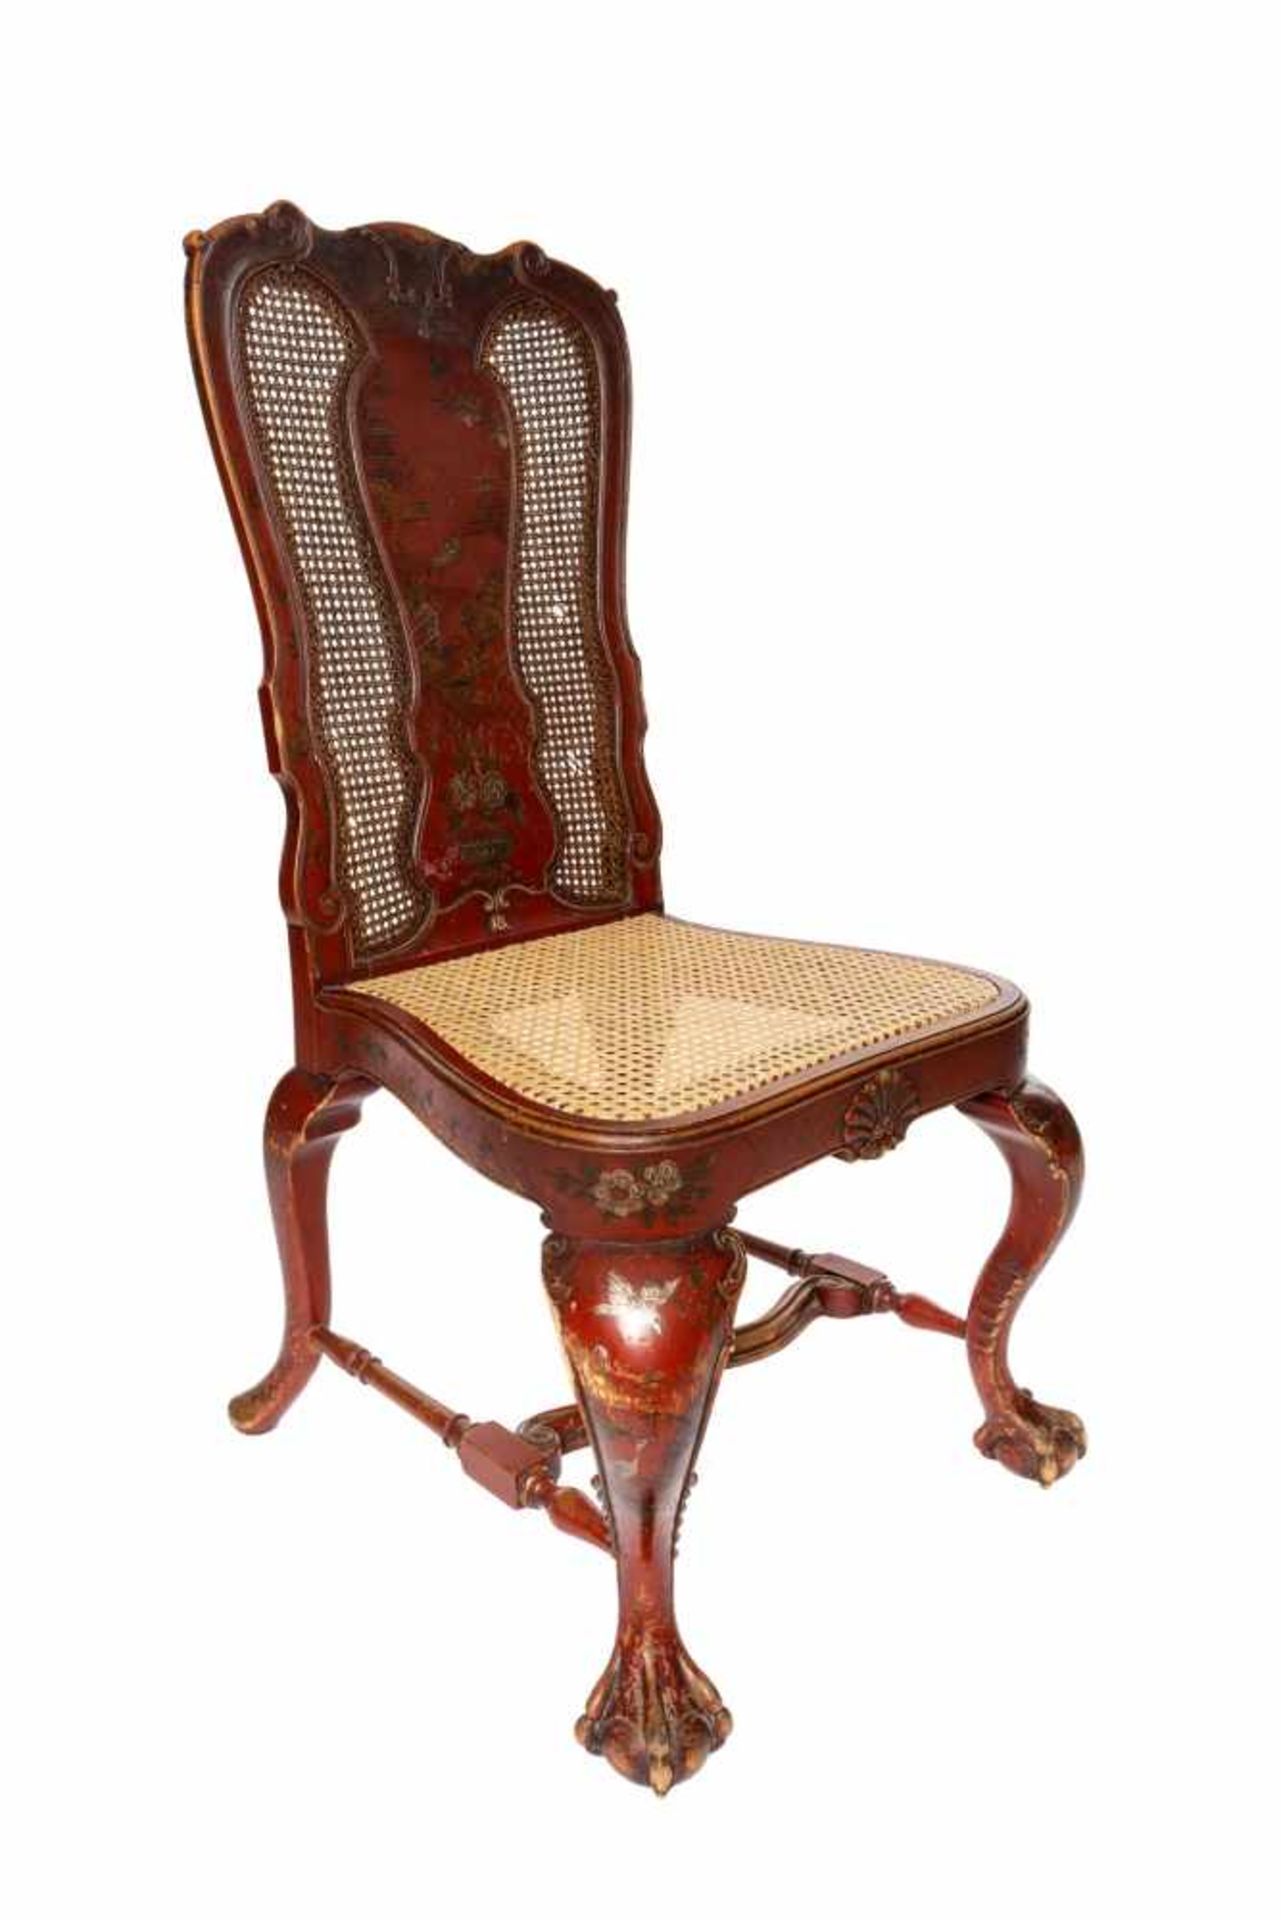 2 chinesische Stühle2 chinesische Stühle mit Flechtung, an einem Stuhl wurde die Flechtung erneuert, - Image 3 of 9